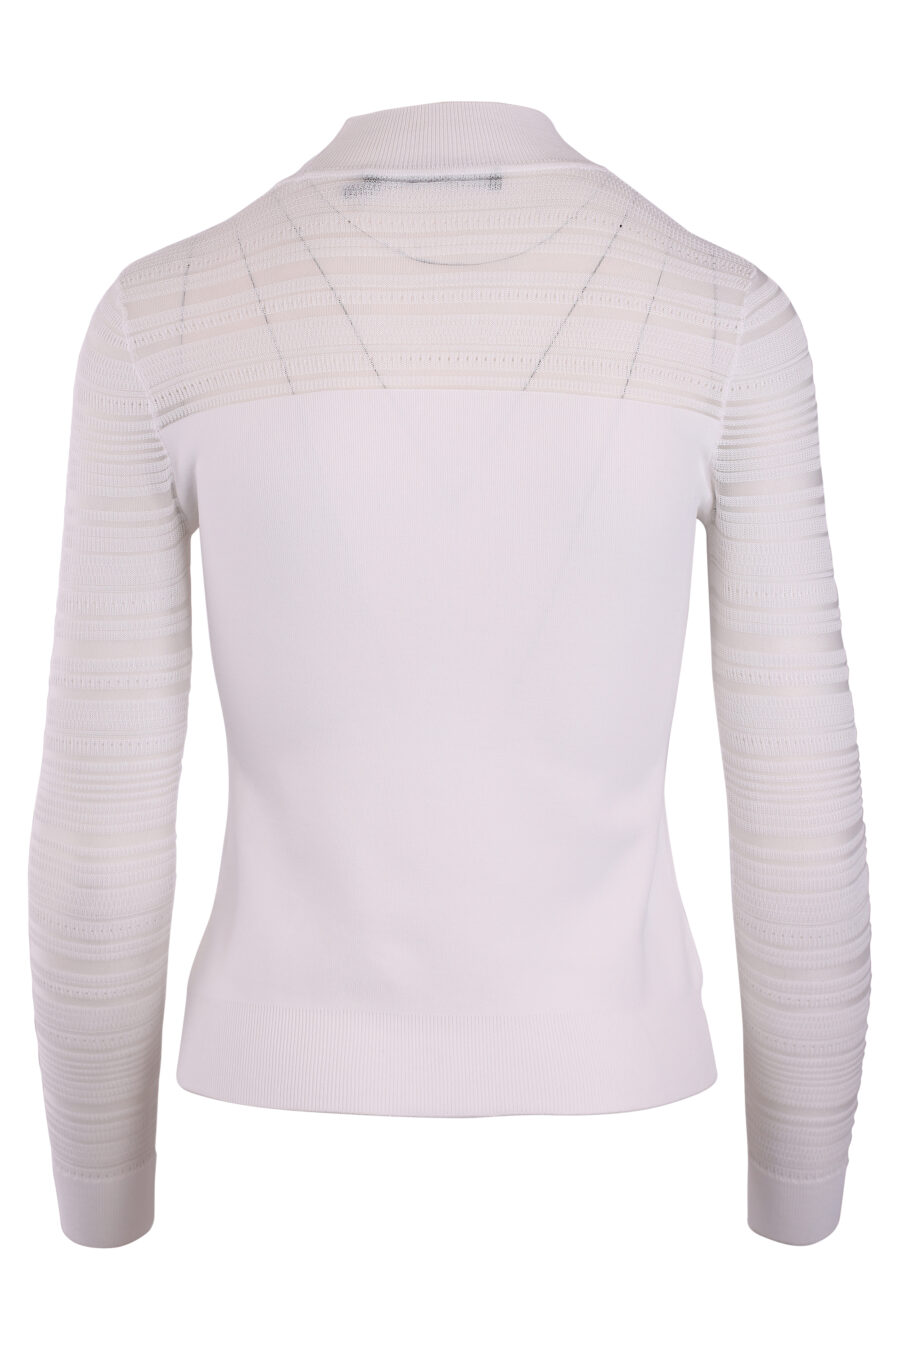 T-shirt branca de manga comprida semitransparente - IMG 3262